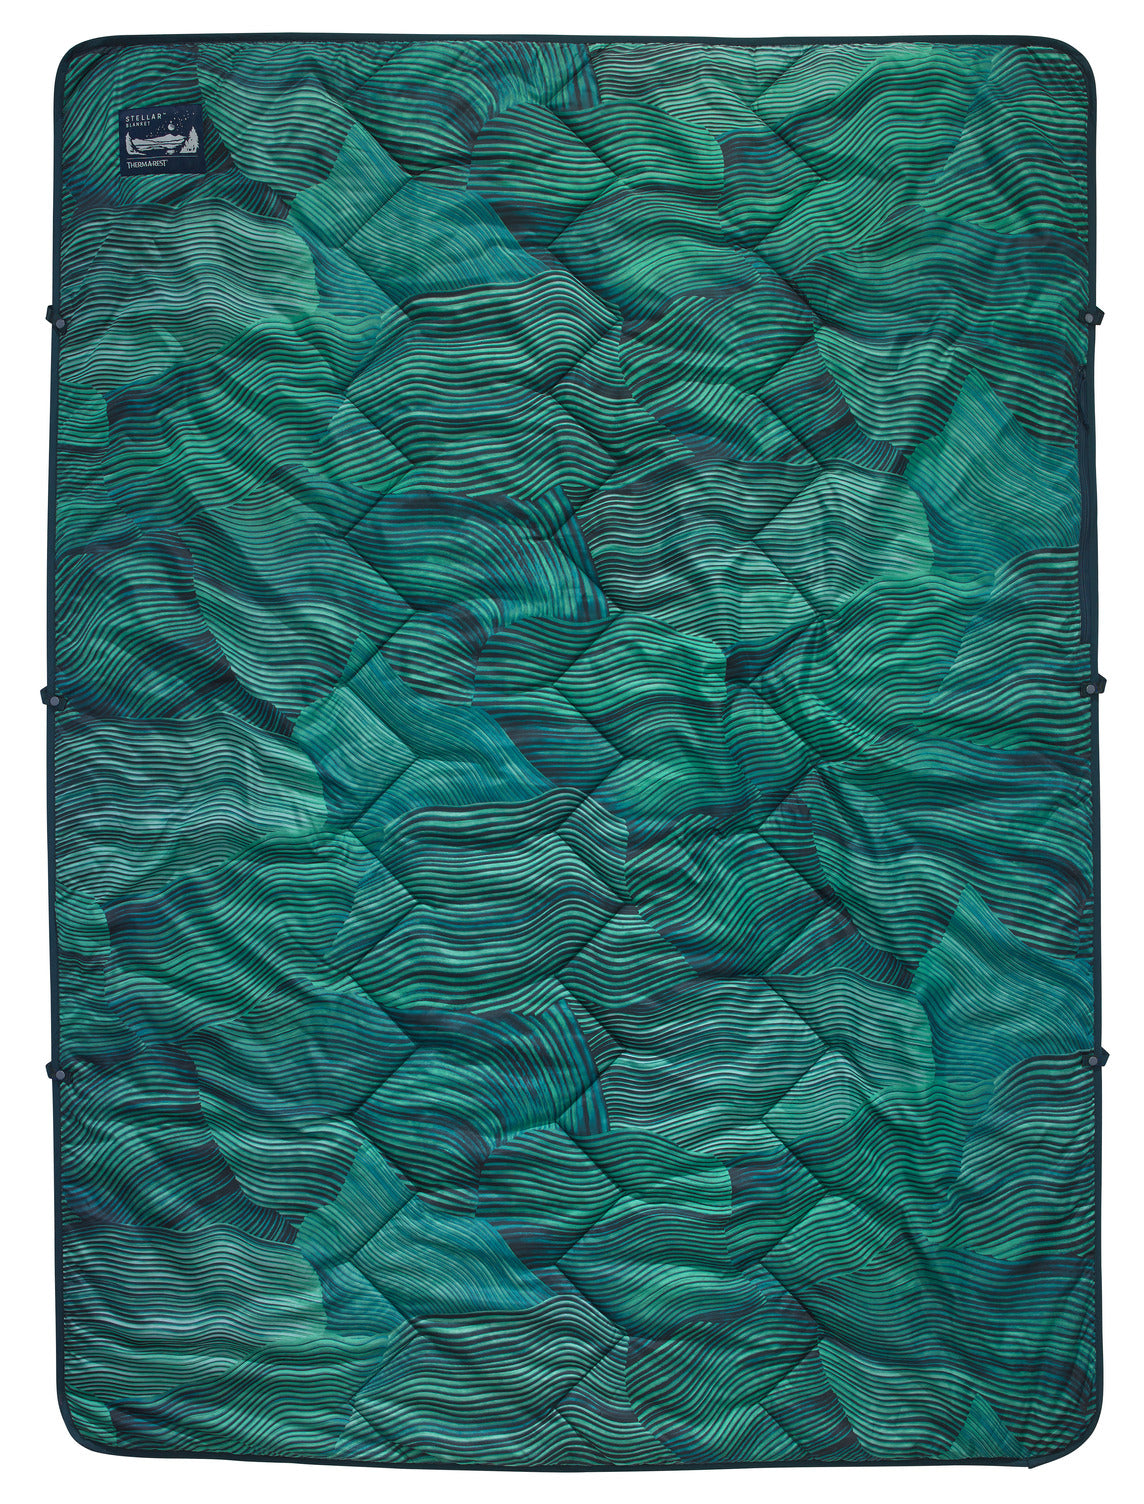 Thermarest Stellar Blanket Green Wave Print